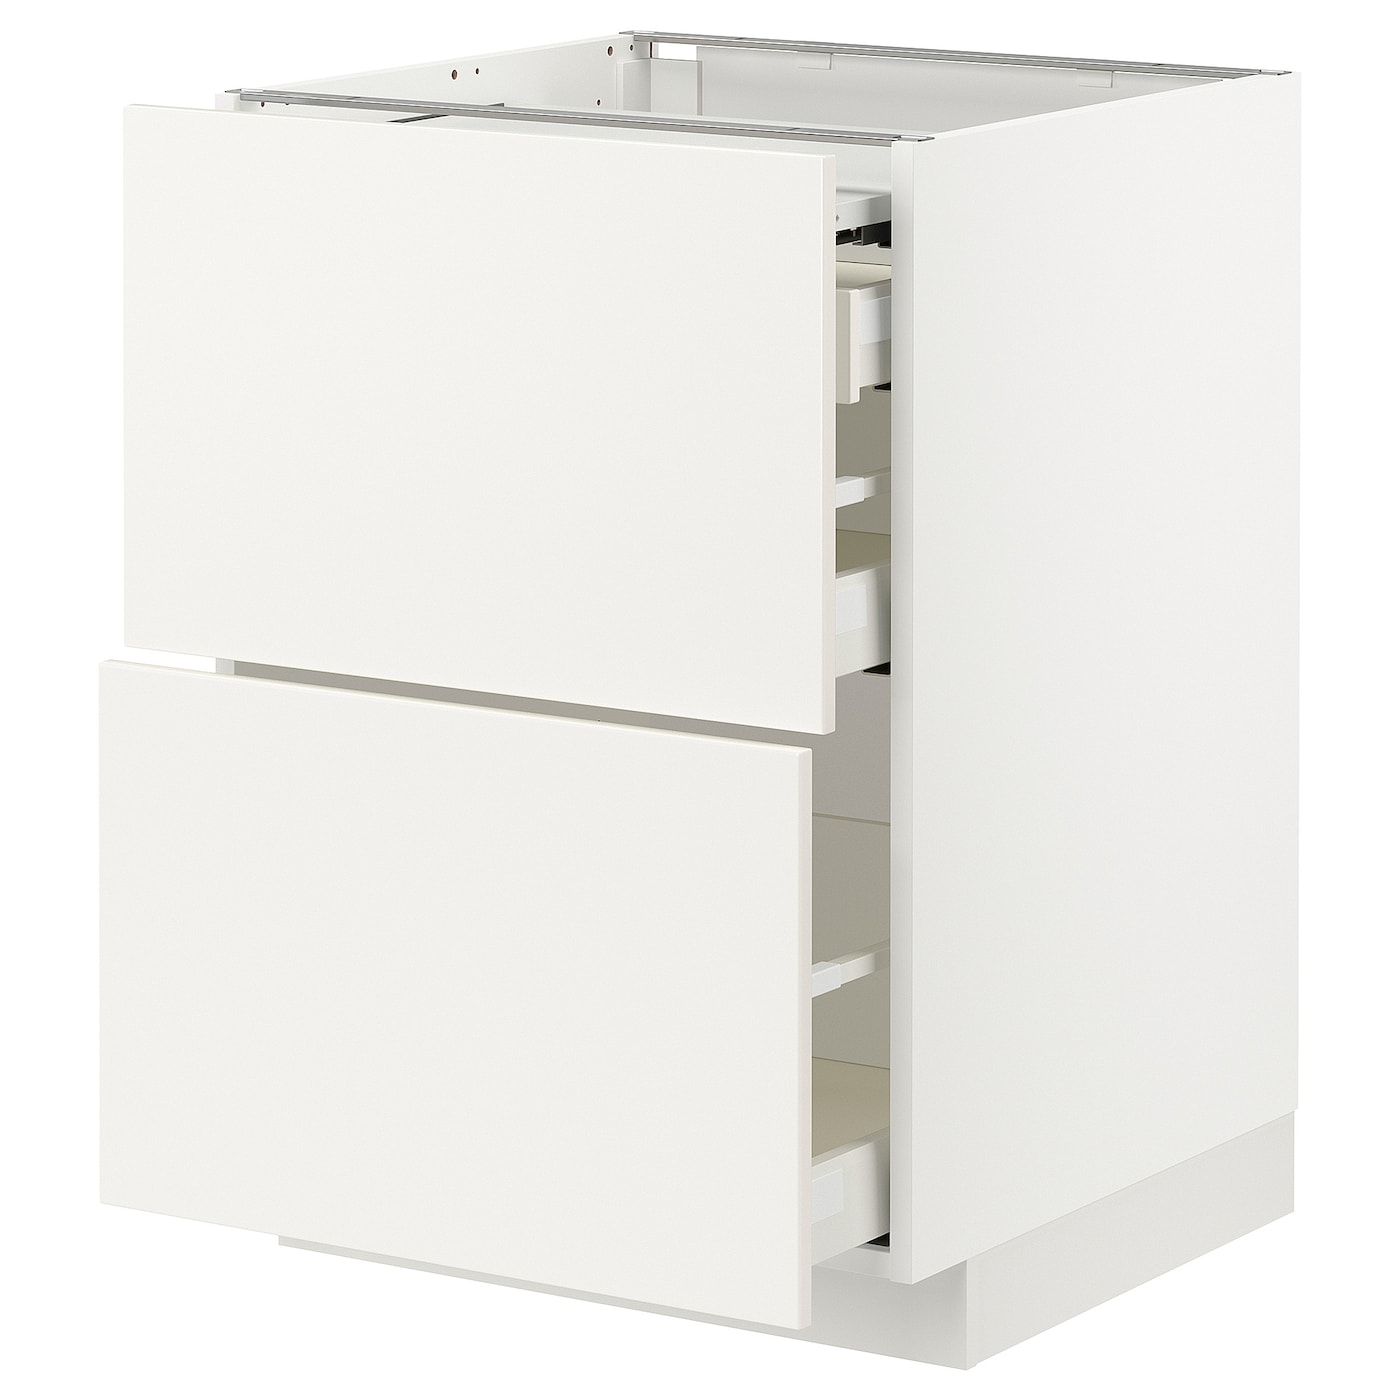 Напольный шкаф - METOD / MAXIMERA IKEA/ МЕТОД/ МАКСИМЕРА ИКЕА,  88х60 см, белый